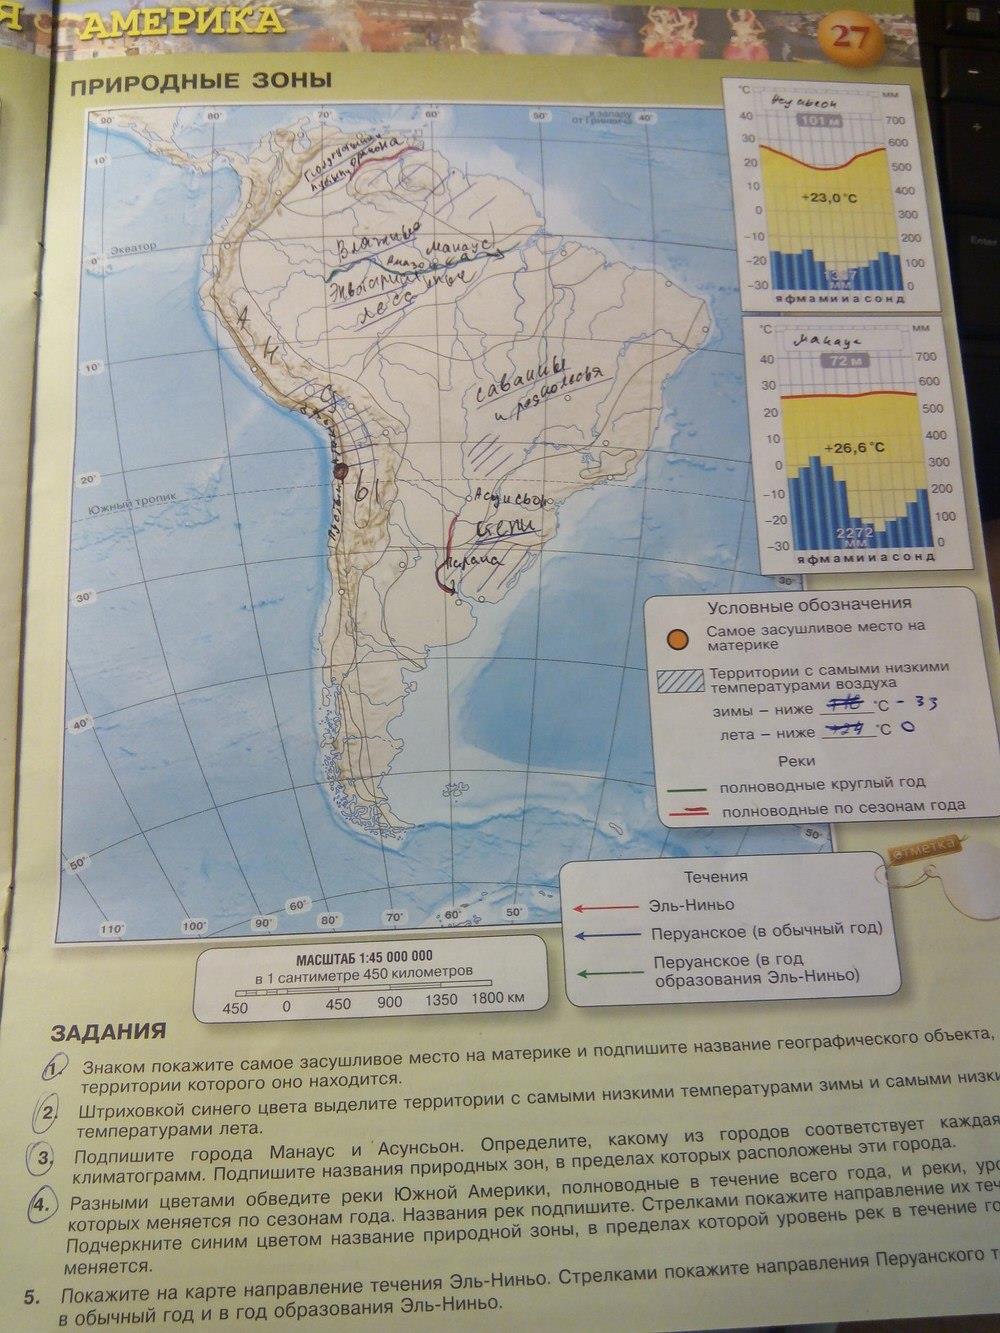 Кк южная америка 7. География 7 класс контурные карты стр 27. Карта Южной Америки 7 класс география. Гдз по географии 7 класс карта. Карта по географии 7 класс Южная Америка.